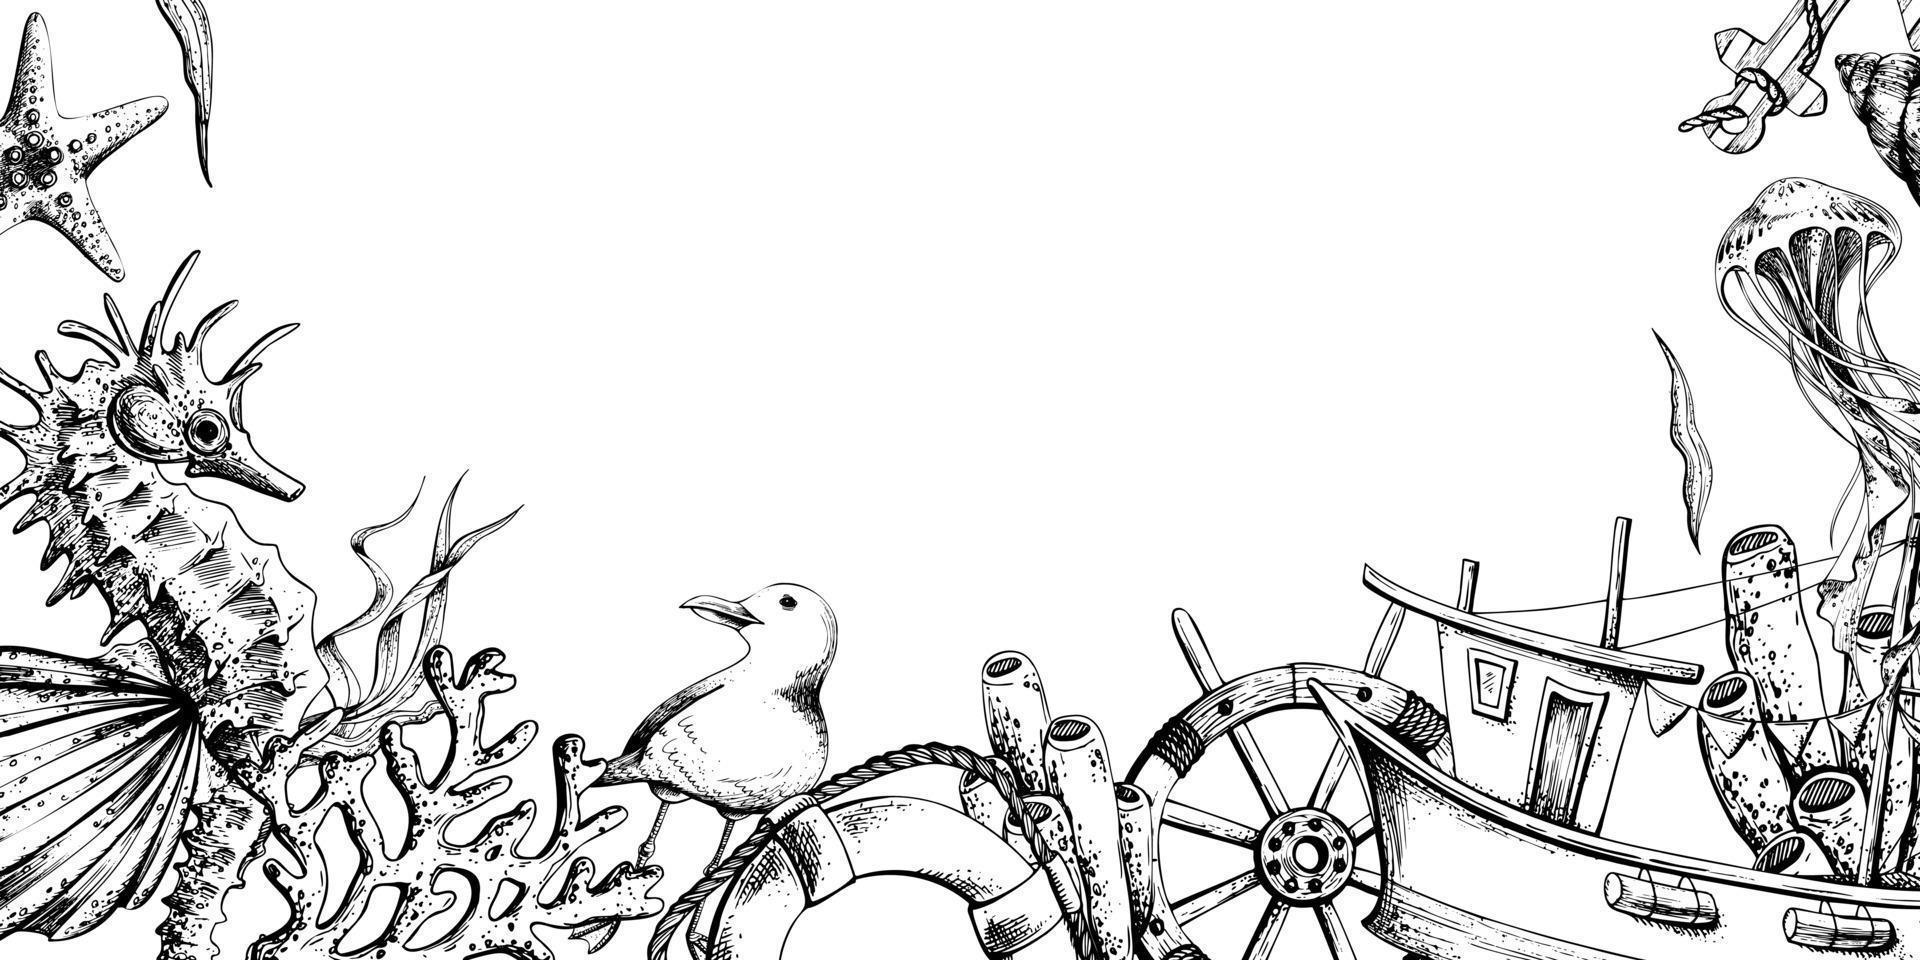 marina animales con un pescar bote, un direccion rueda y un vida boya. ilustración de mano dibujado gráficos, vector en eps formato. plantilla, marco en un blanco antecedentes.